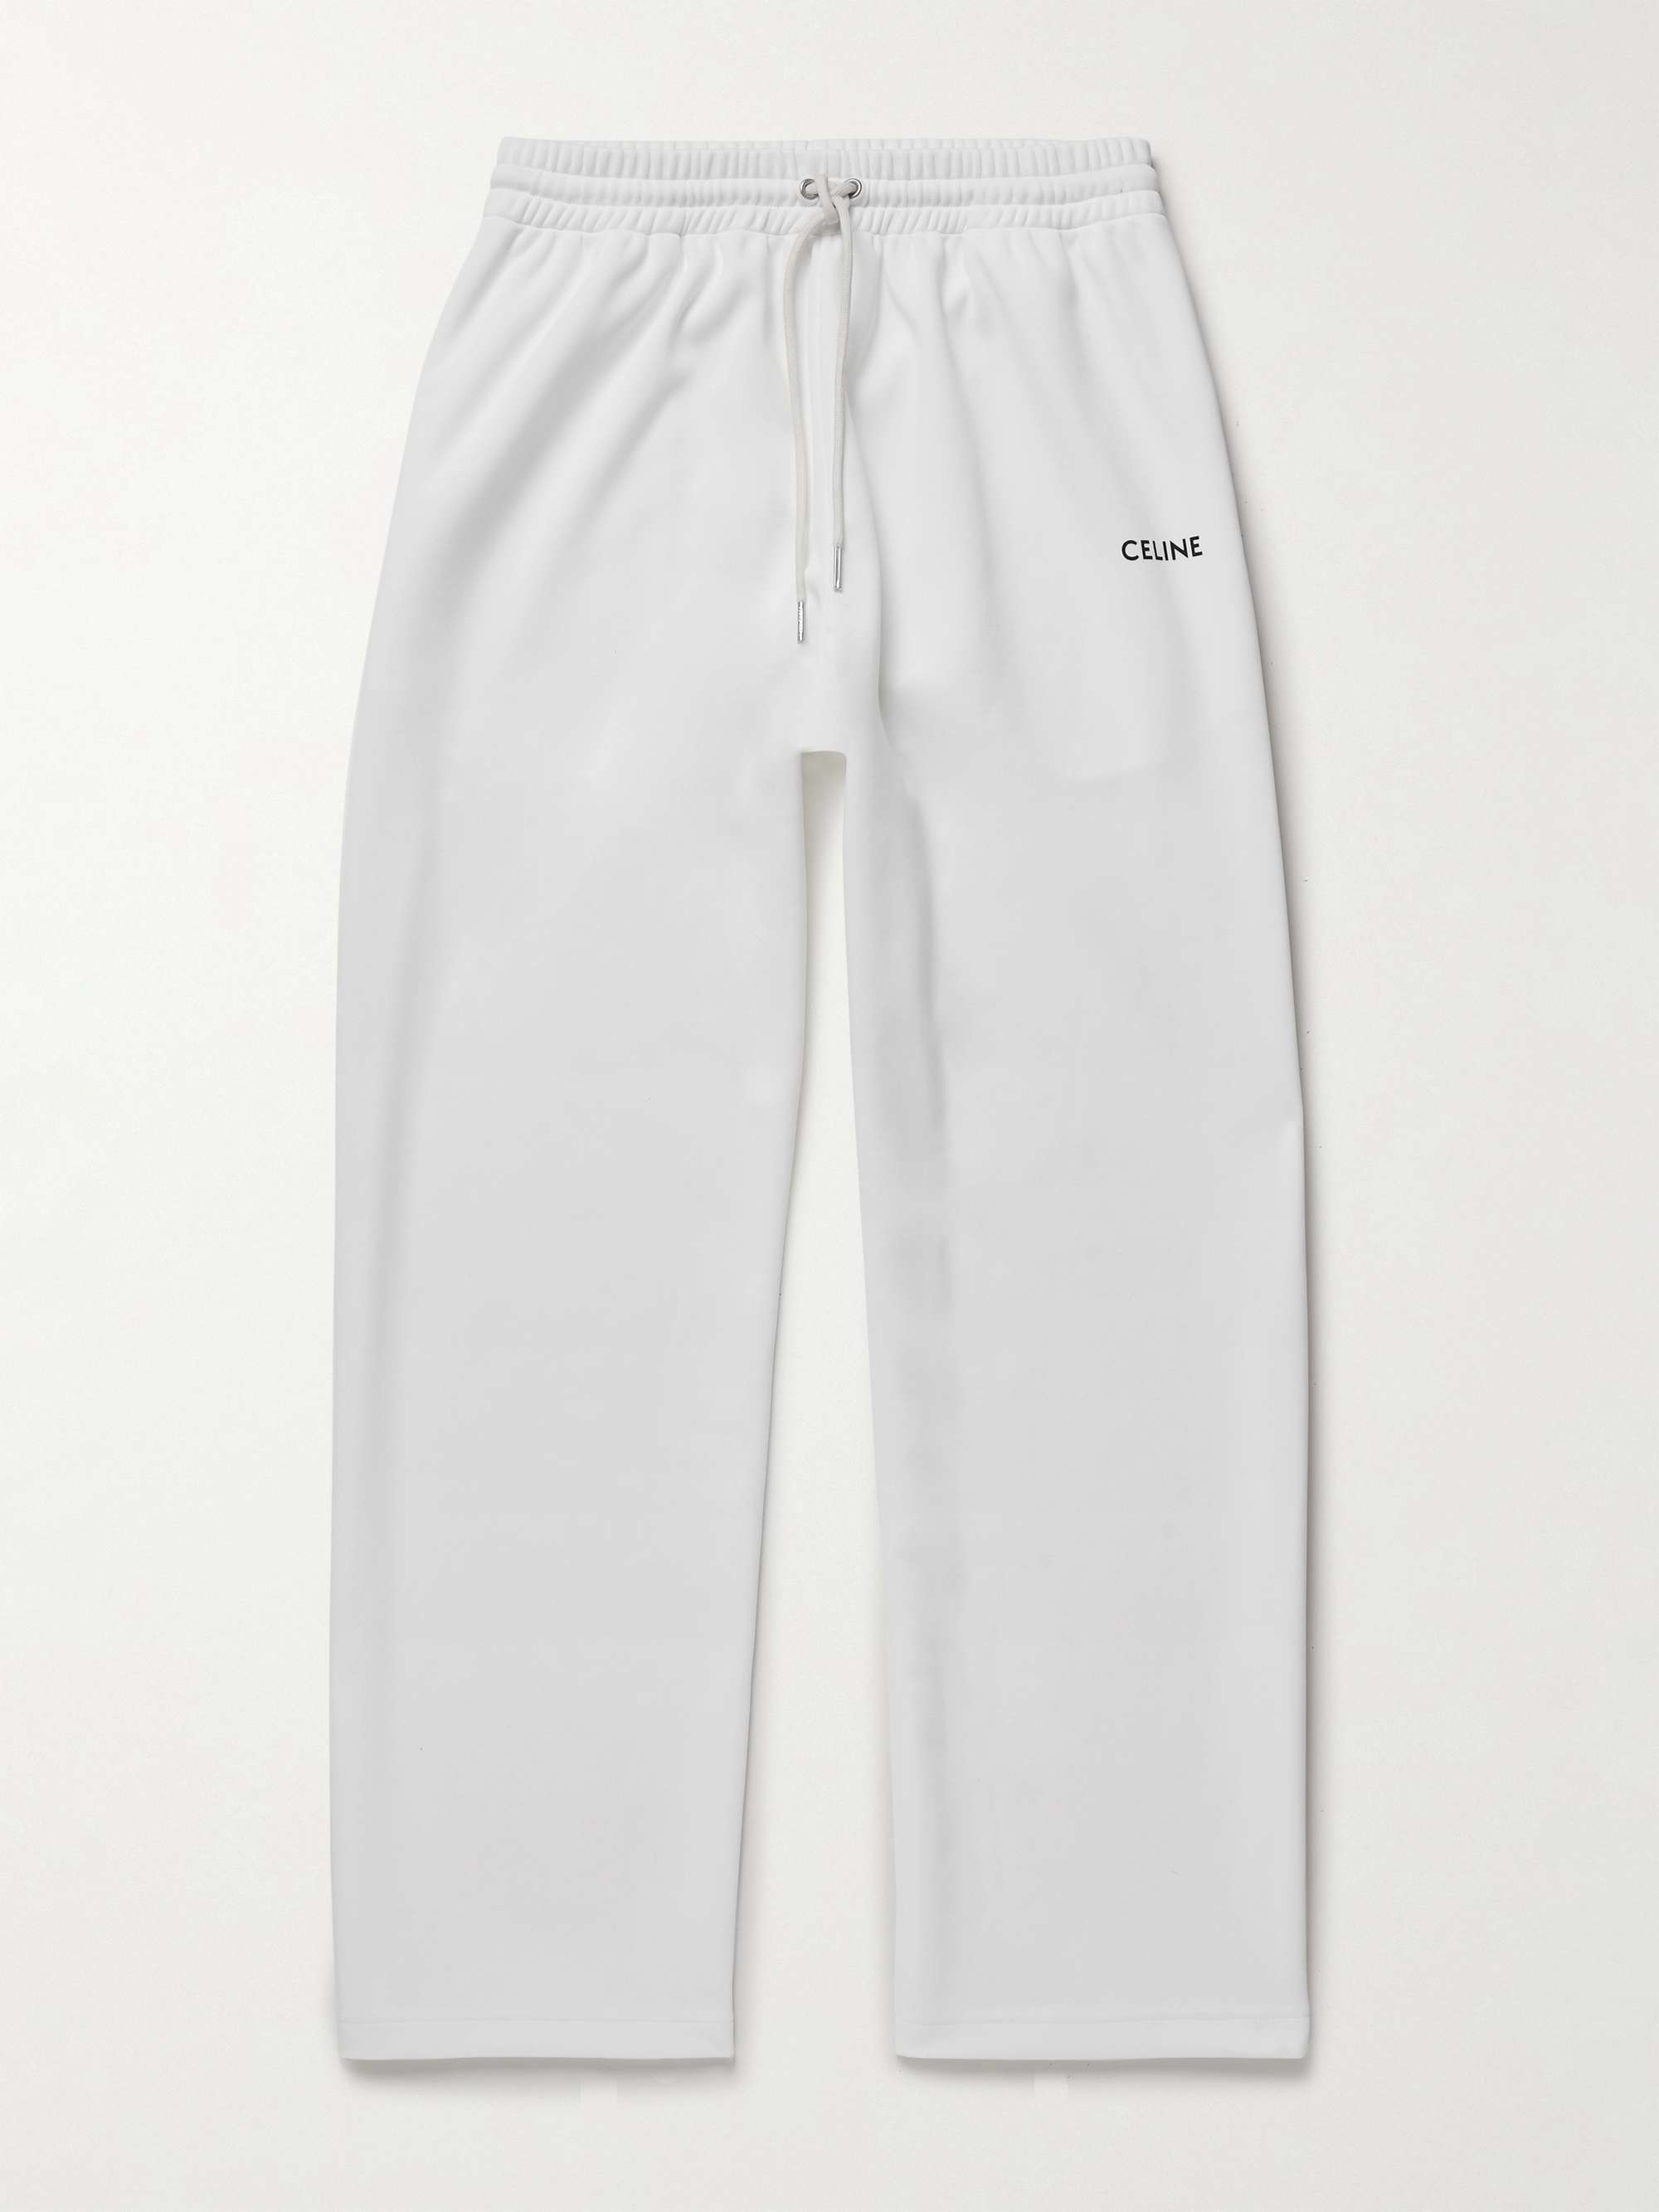 CELINE HOMME Tapered Logo-Embroidered Jersey Sweatpants for Men | MR PORTER